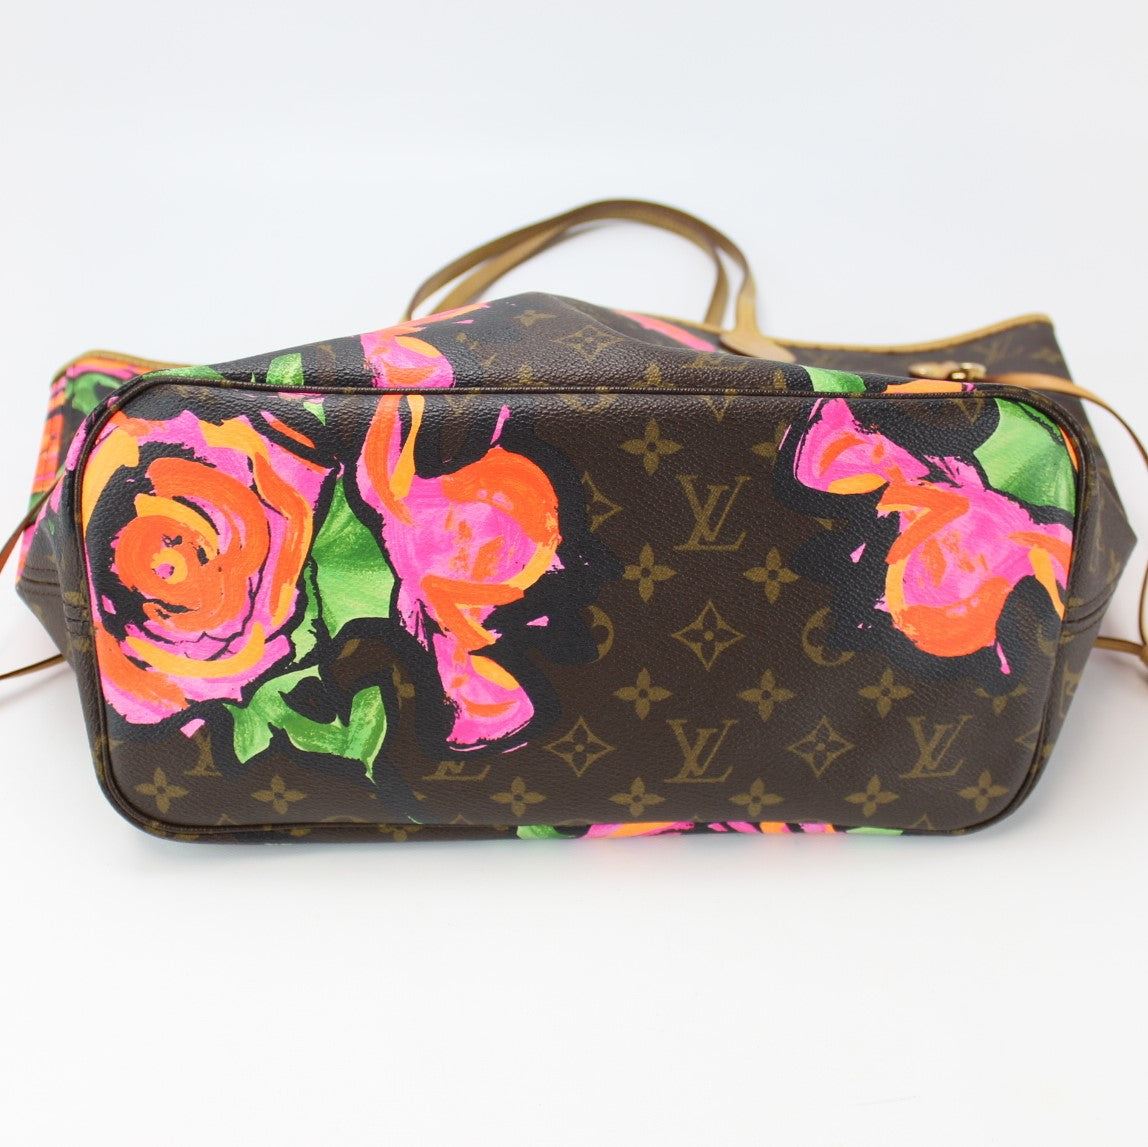 Neverfull MM Monogram Stephen Sprouse Roses (PL4) – Keeks Designer Handbags